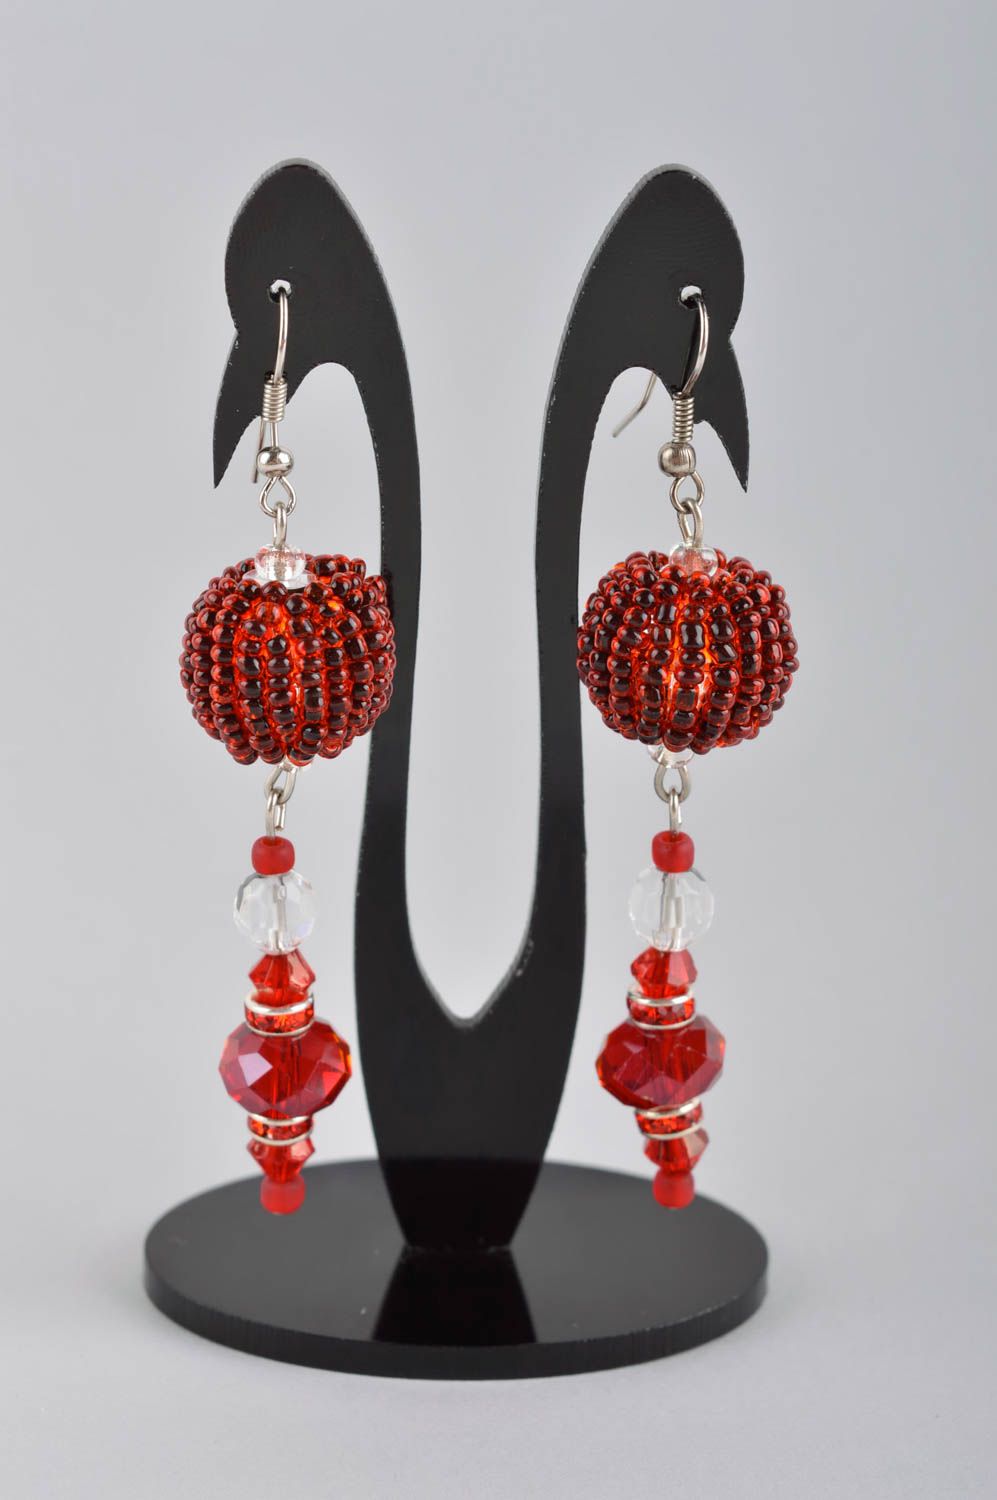 Beaded earrings handmade jewelry dangling earrings women accessories gift ideas photo 2